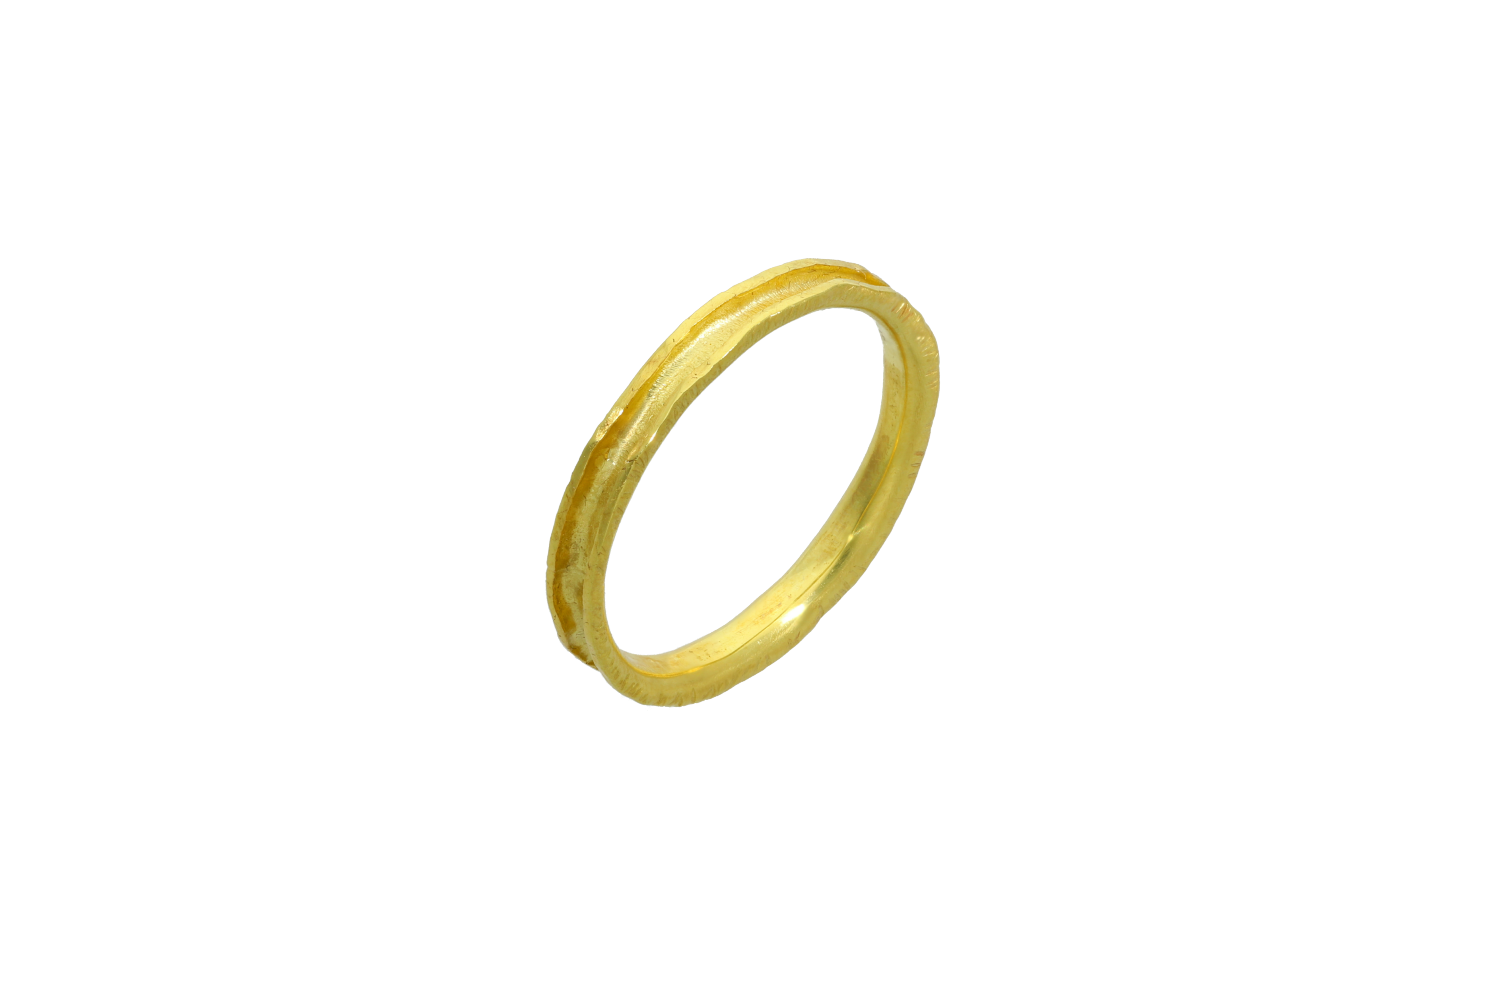 Βέρες Γάμου χρυσές 14Κ, Βέρα τετραγωνισμένη με λουκιά στο κέντρο ματ και λουστρέ άκρες